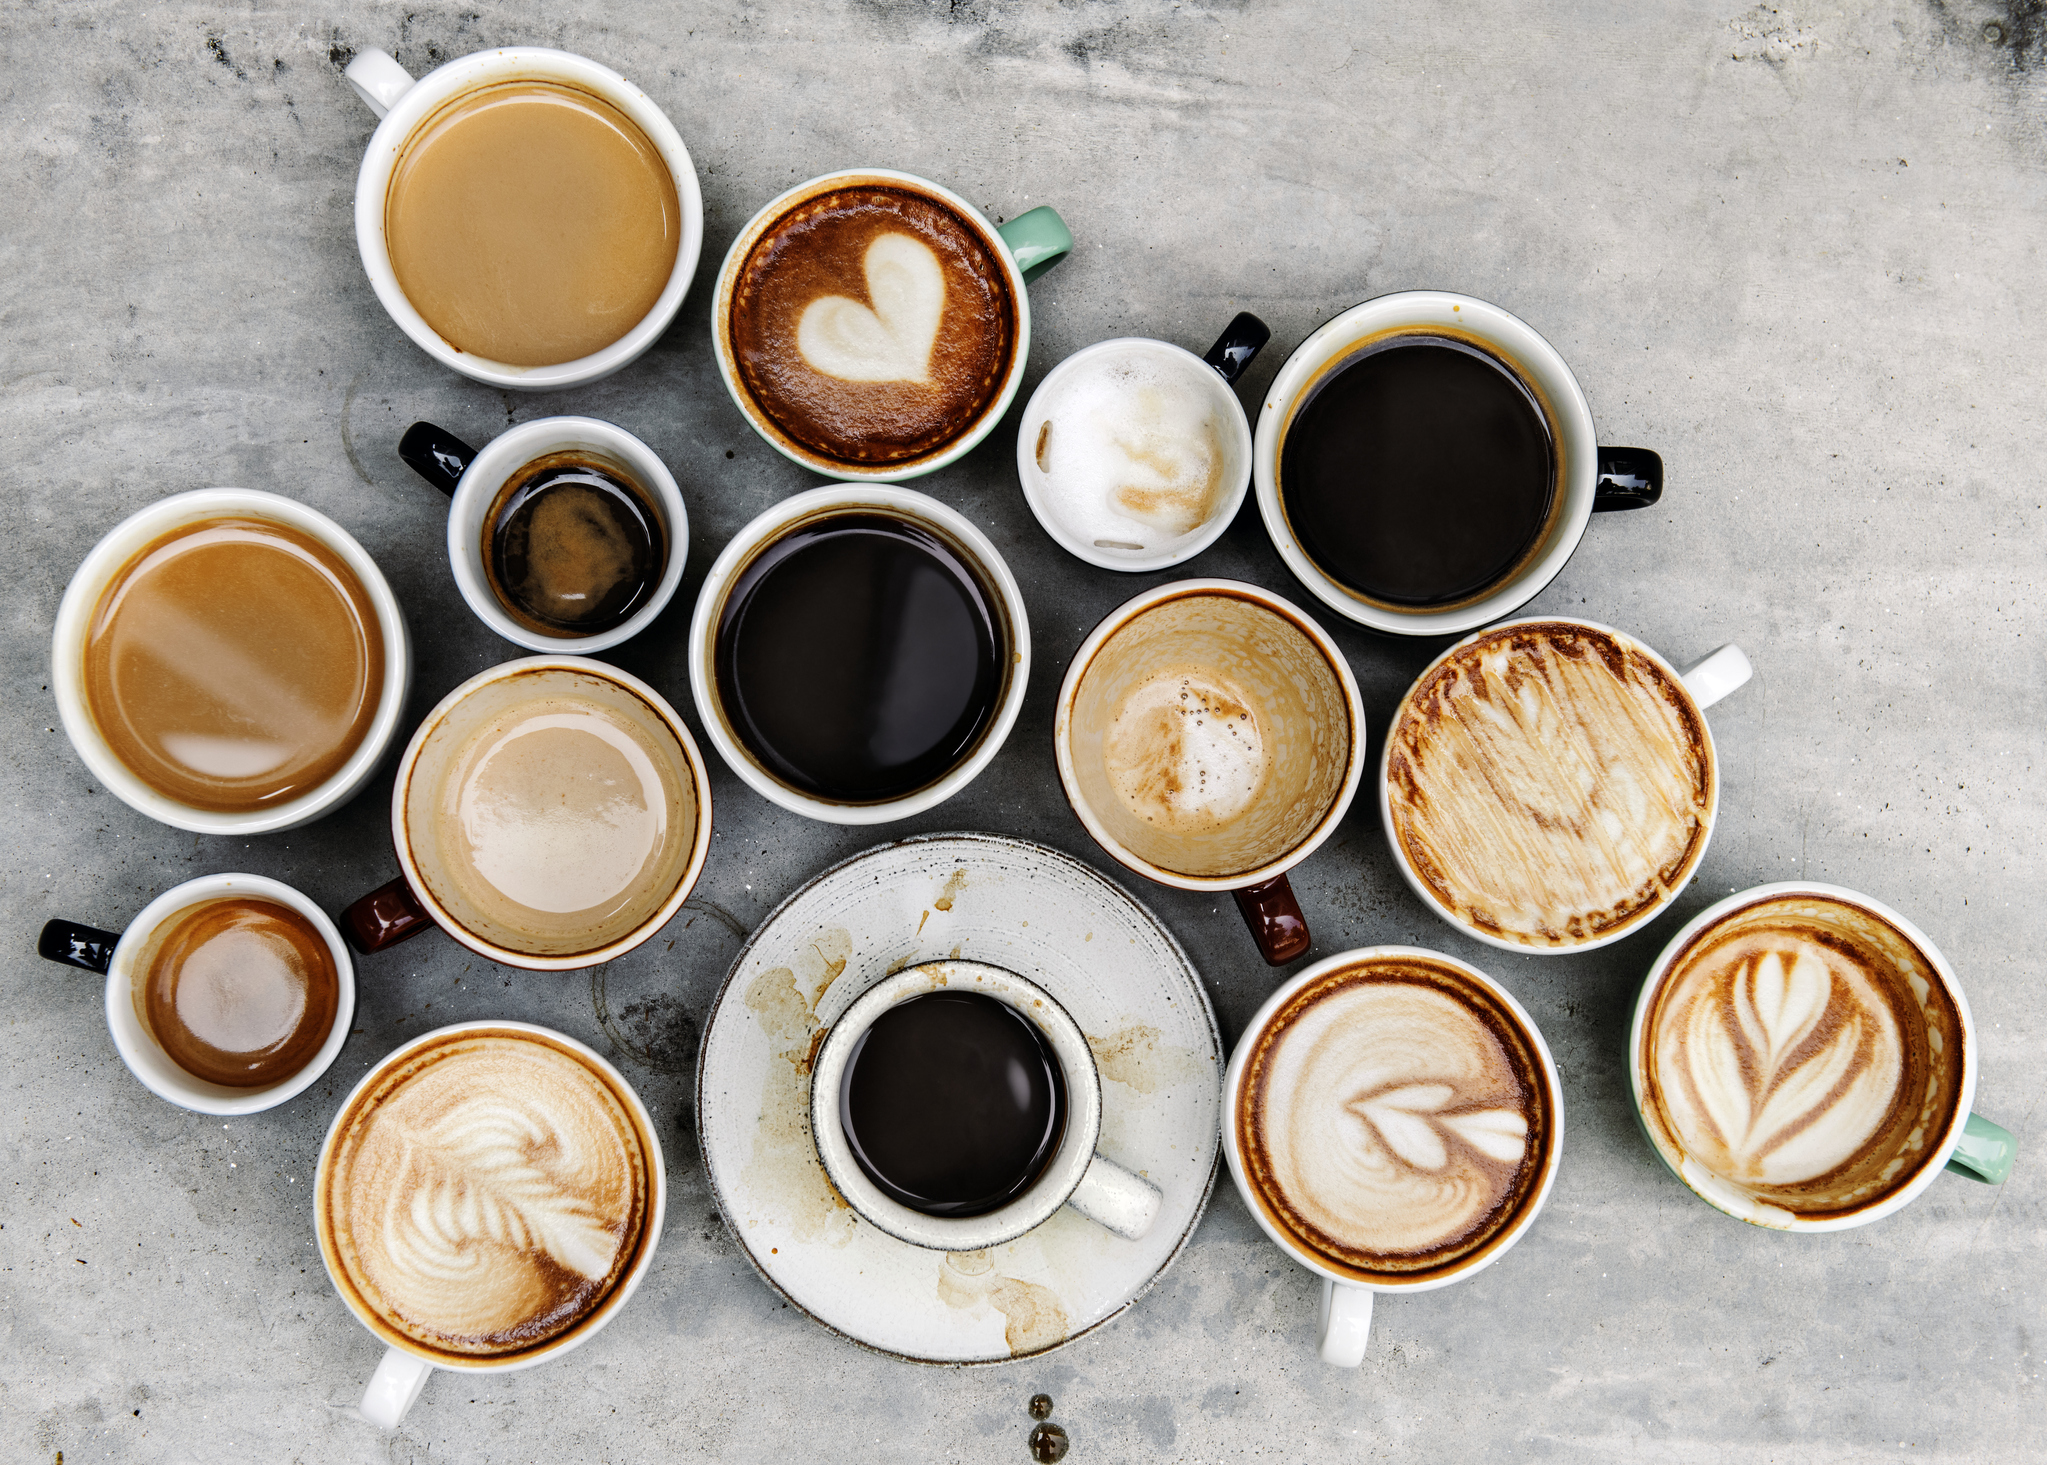 Καφές: Ποια είναι η καλύτερη ώρα για να πιείς τον καφέ σου;